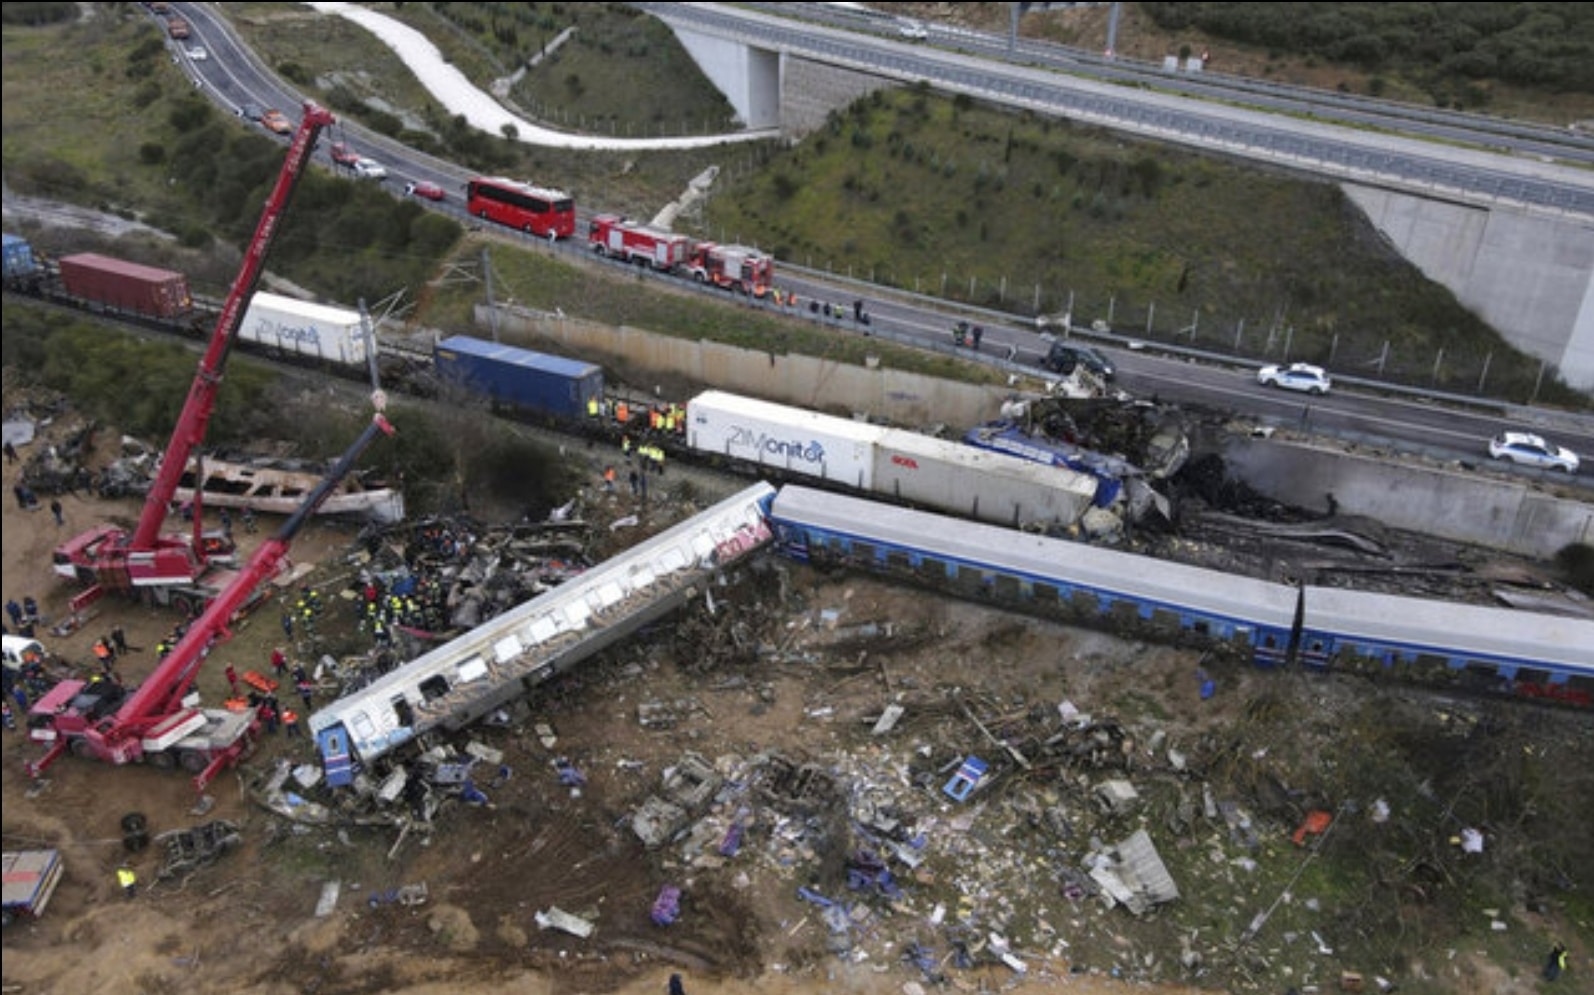 Yunanistan tren kazası